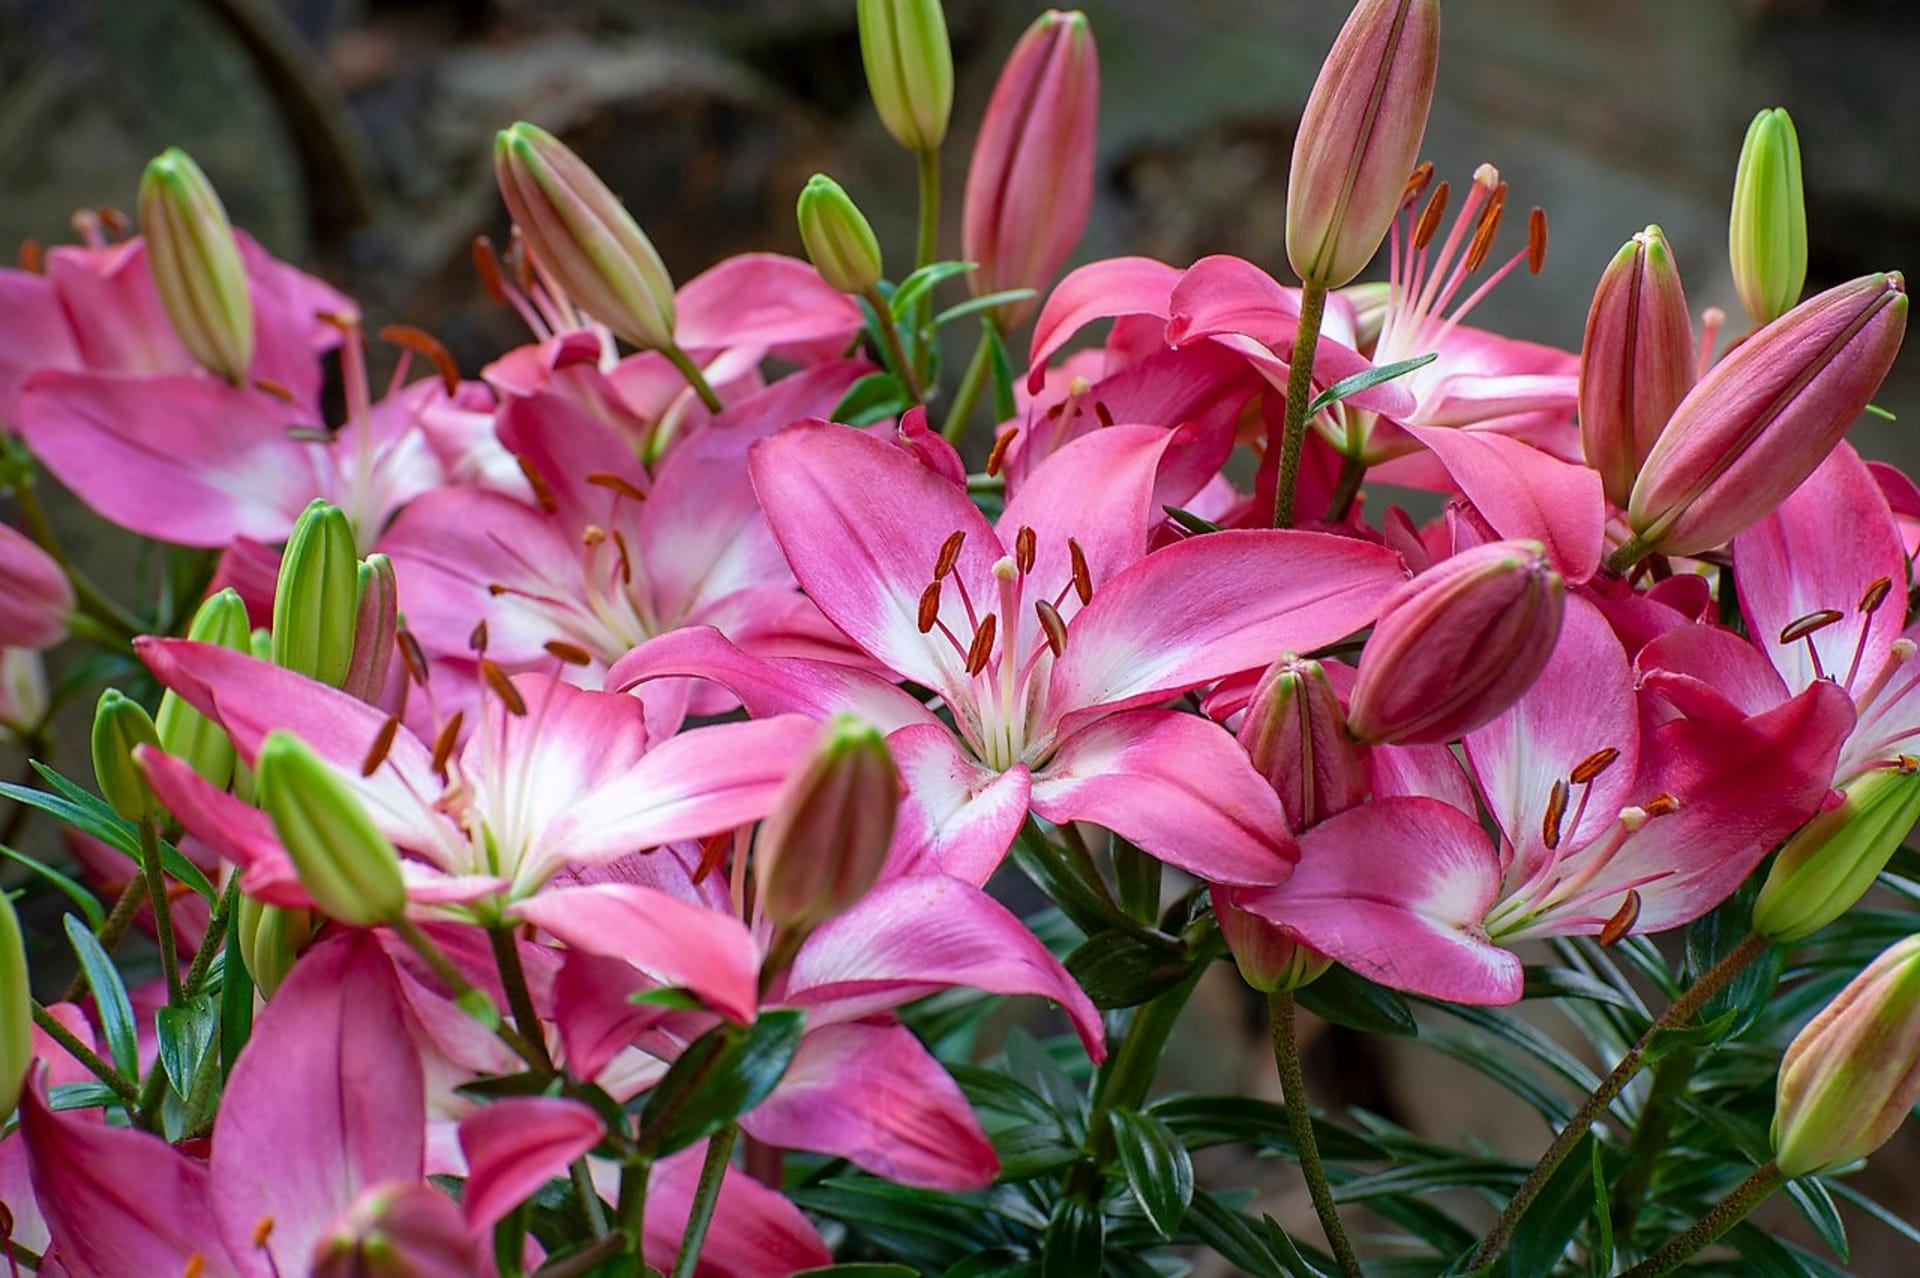 Šest nejkrásnějších letních cibulovin: Lilie (Lilium) patří bezesporu ke skvostům zahrad a balkonů, a to hlavně díky exoticky honosné kráse květů. Existuje mnoho různých skupin, druhů a kultivarů. 